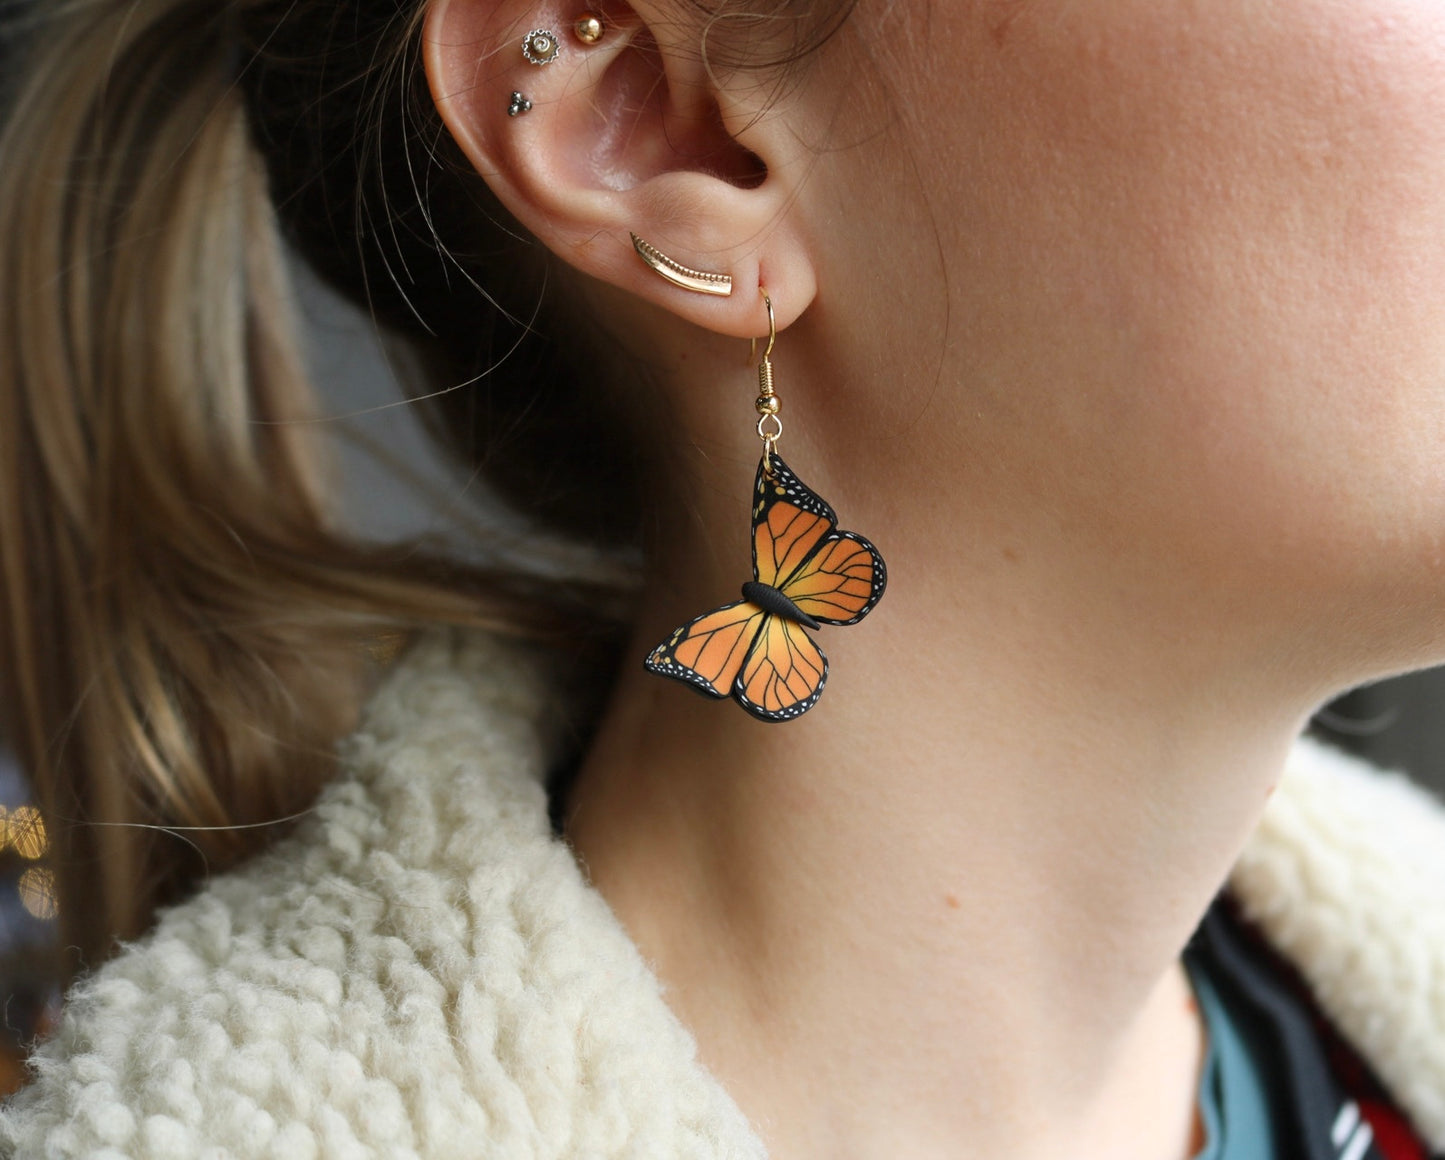 Monarch Butterfly Earrings - Polymer Clay Dangle Earrings 𐀔 Two Sizes!